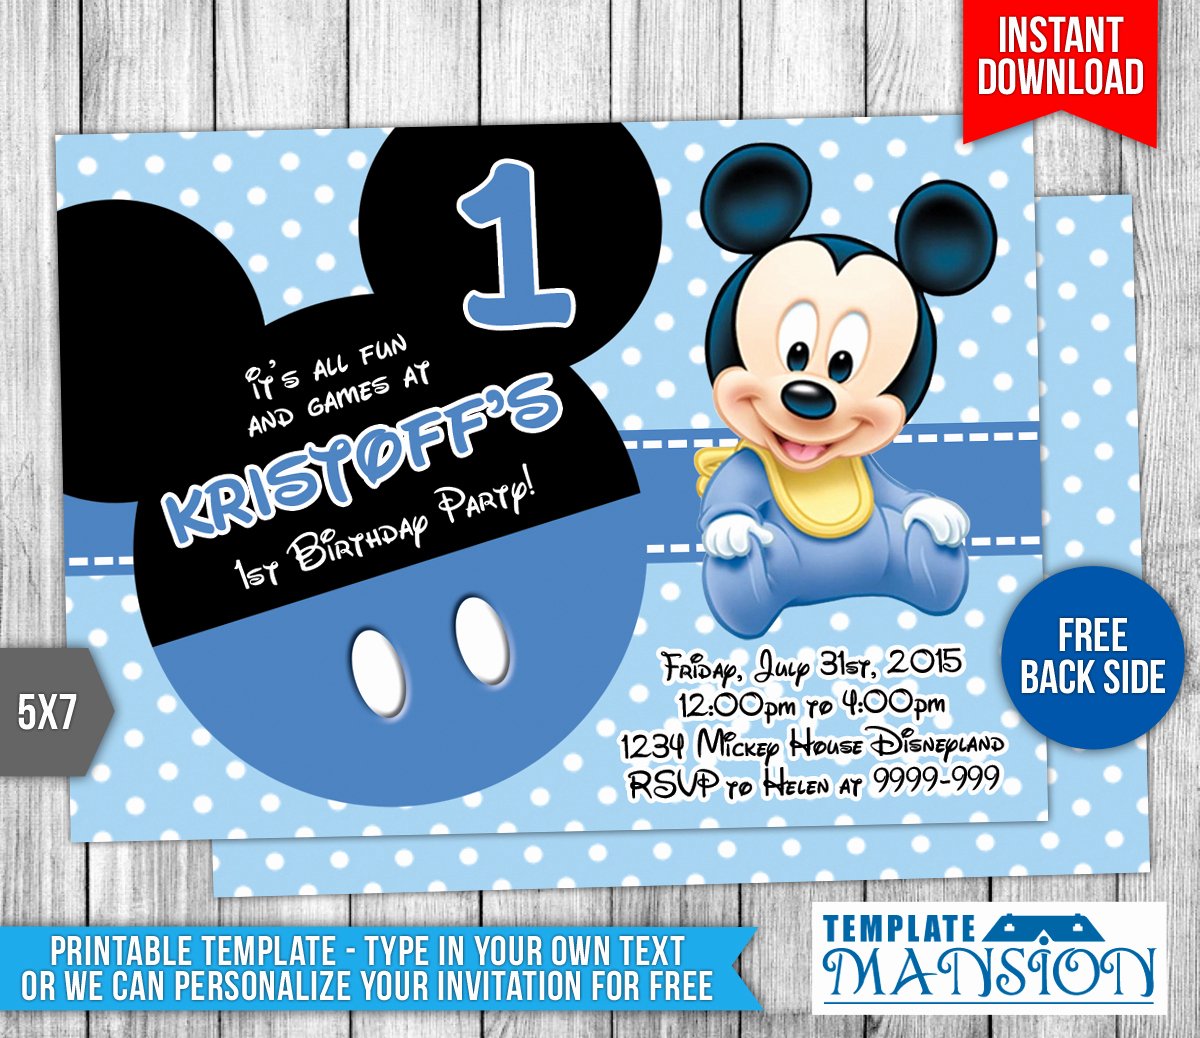 Baby Mickey Mouse Birthday Invitations Elegant Baby Mickey Mouse Birthday Invitation by Templatemansion